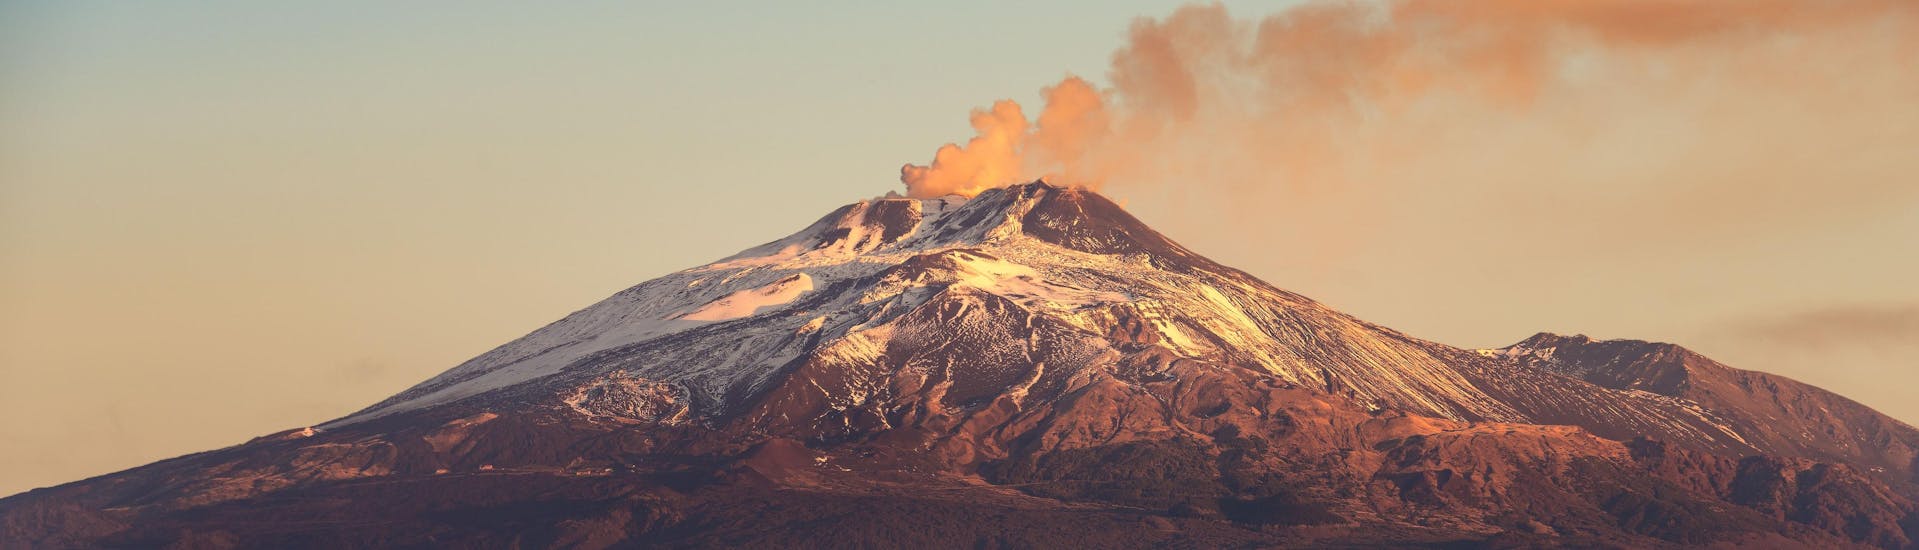 Vista sull'Etna, una meta ambita per i tour ed escursioni sul vulcano.